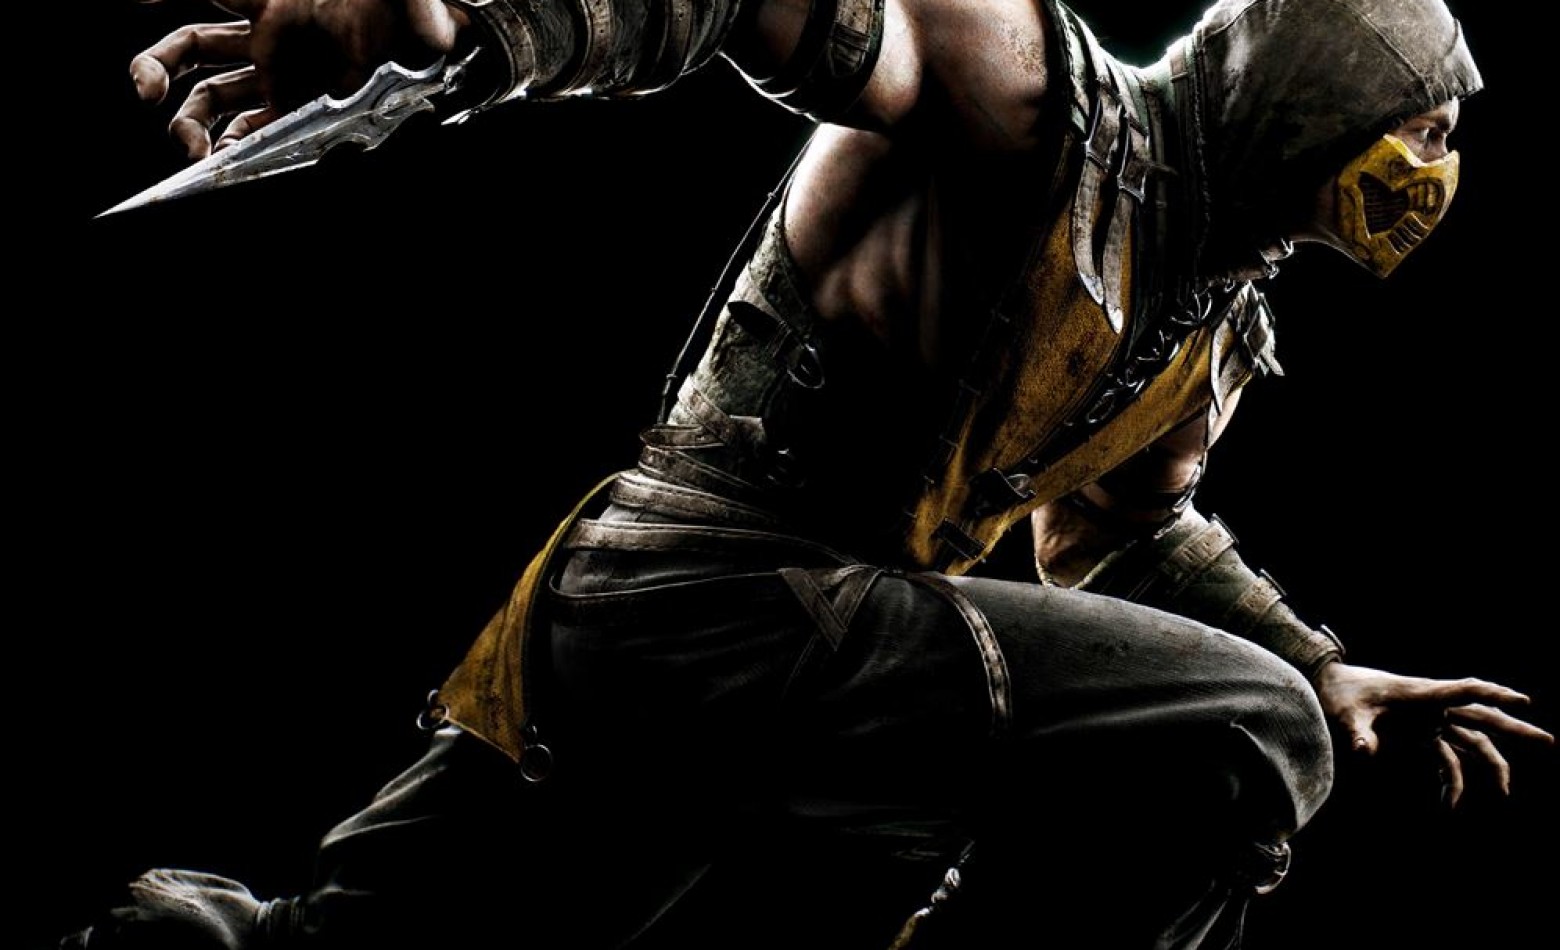 Trama de Mortal Kombat X é “difícil de explicar”